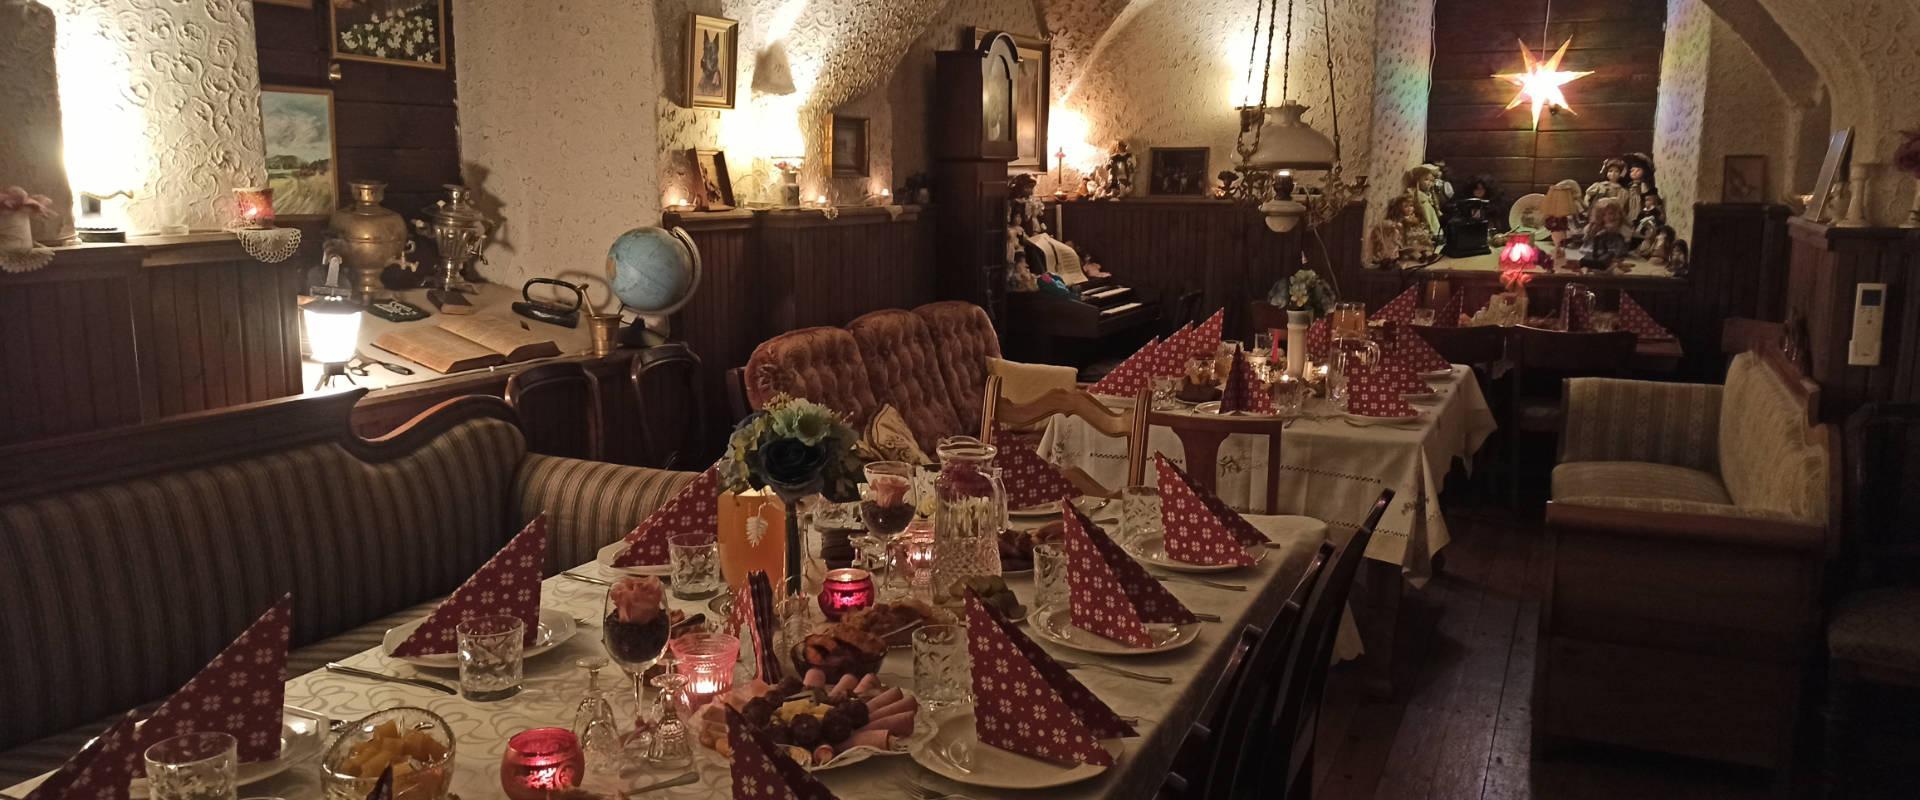 Kuvassa Mäe-Kodan juhlapöytä. Pöydällä punaisia valkotäpläisiä lautasliinoja, jotka on taitettu kolmion muotoon. Lämpimiä sävyjä ja viihtyisää tunnelmaa. Katettu pöytä herkkuineen